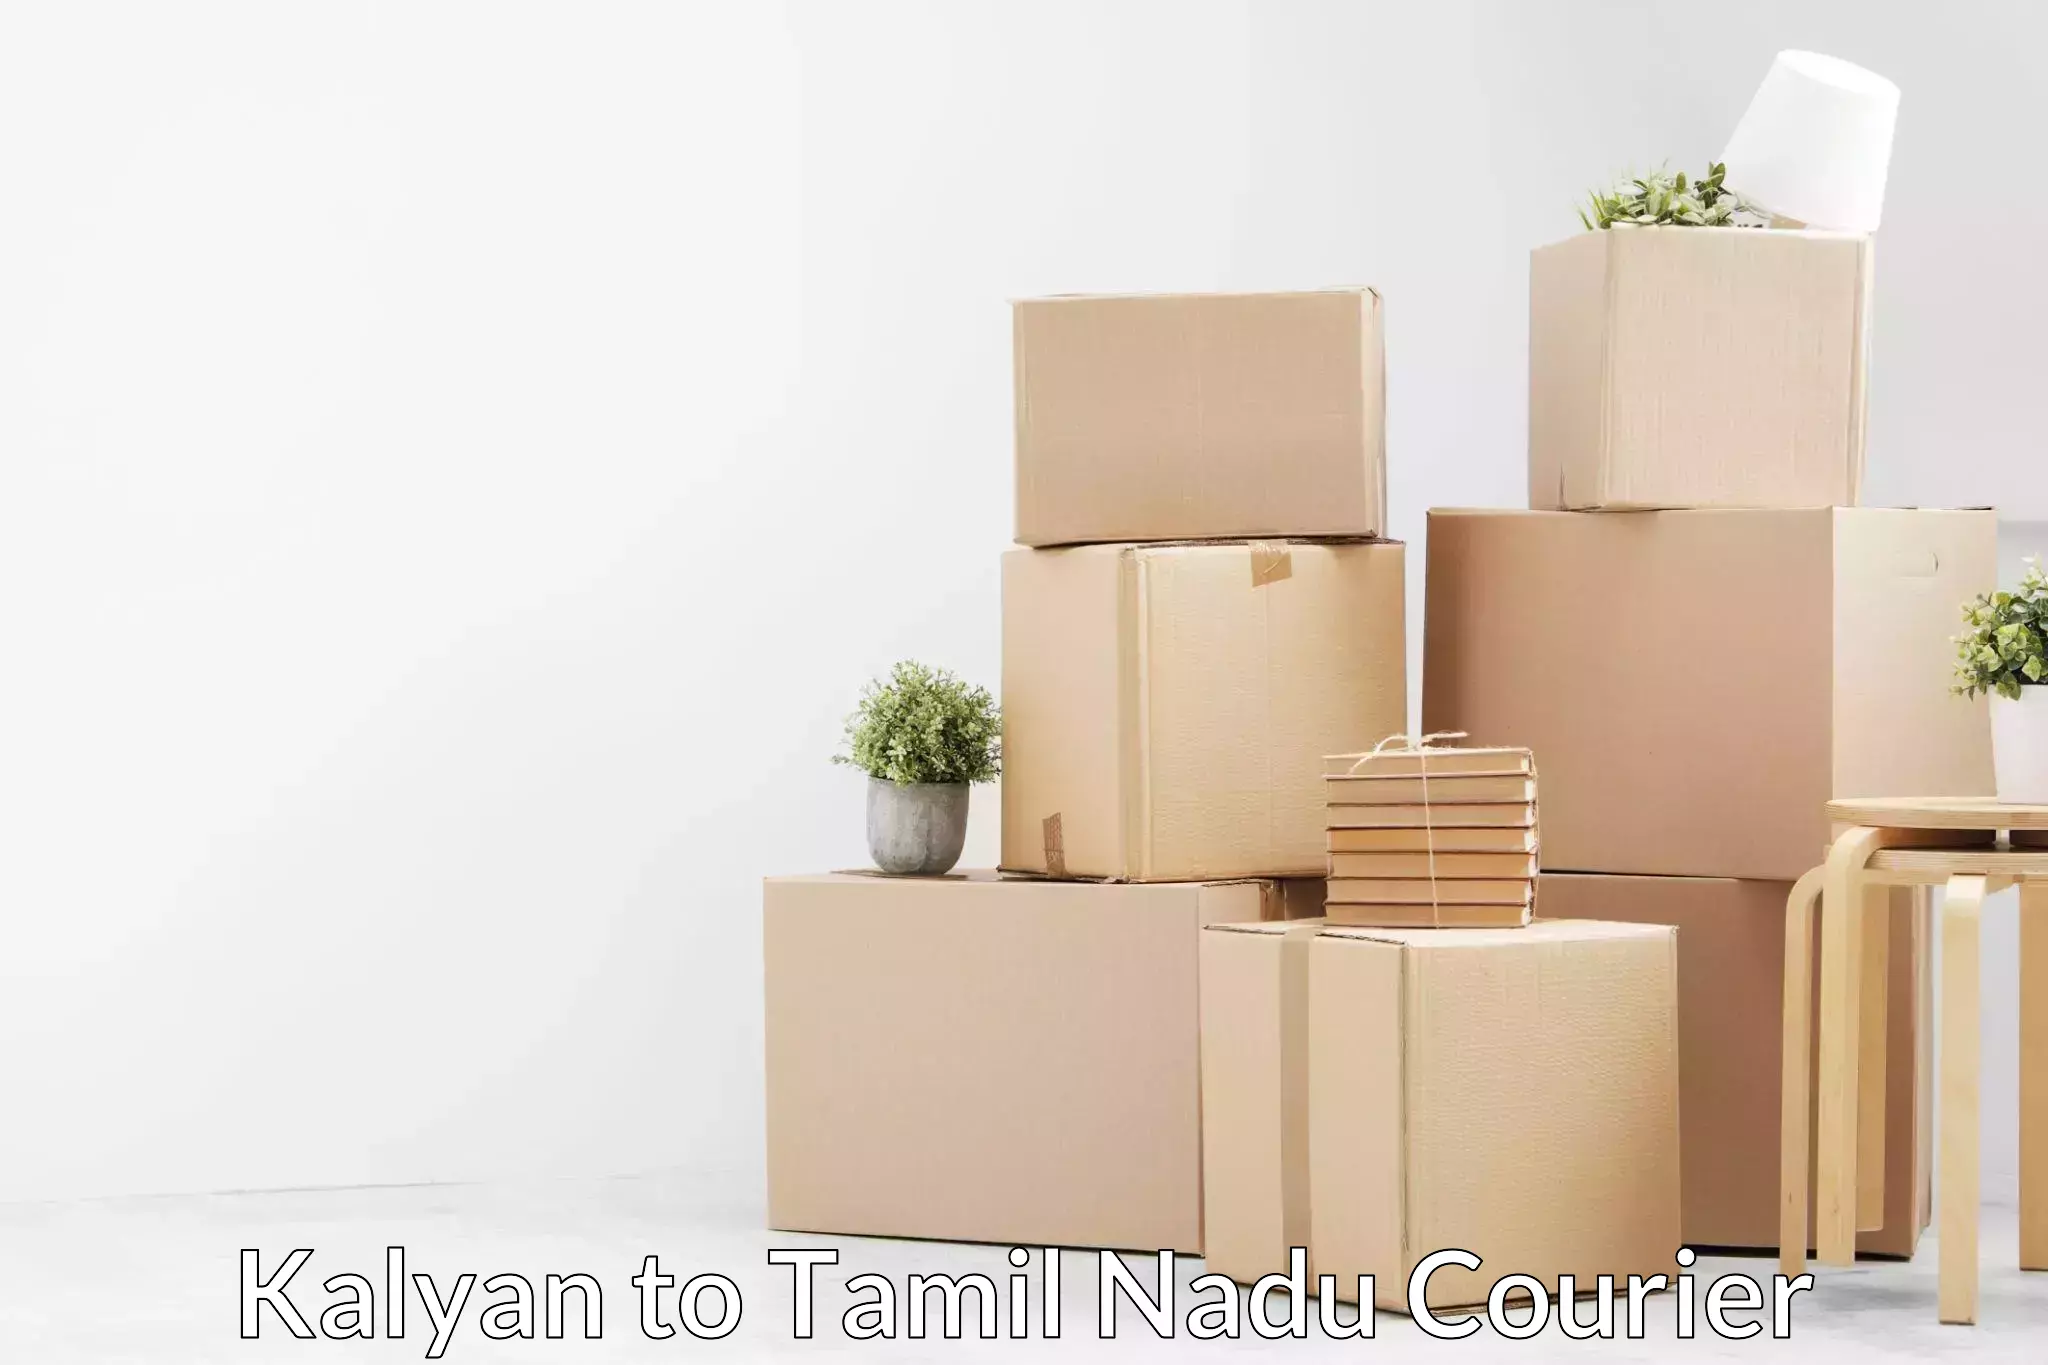 Furniture logistics in Kalyan to Tamil Nadu